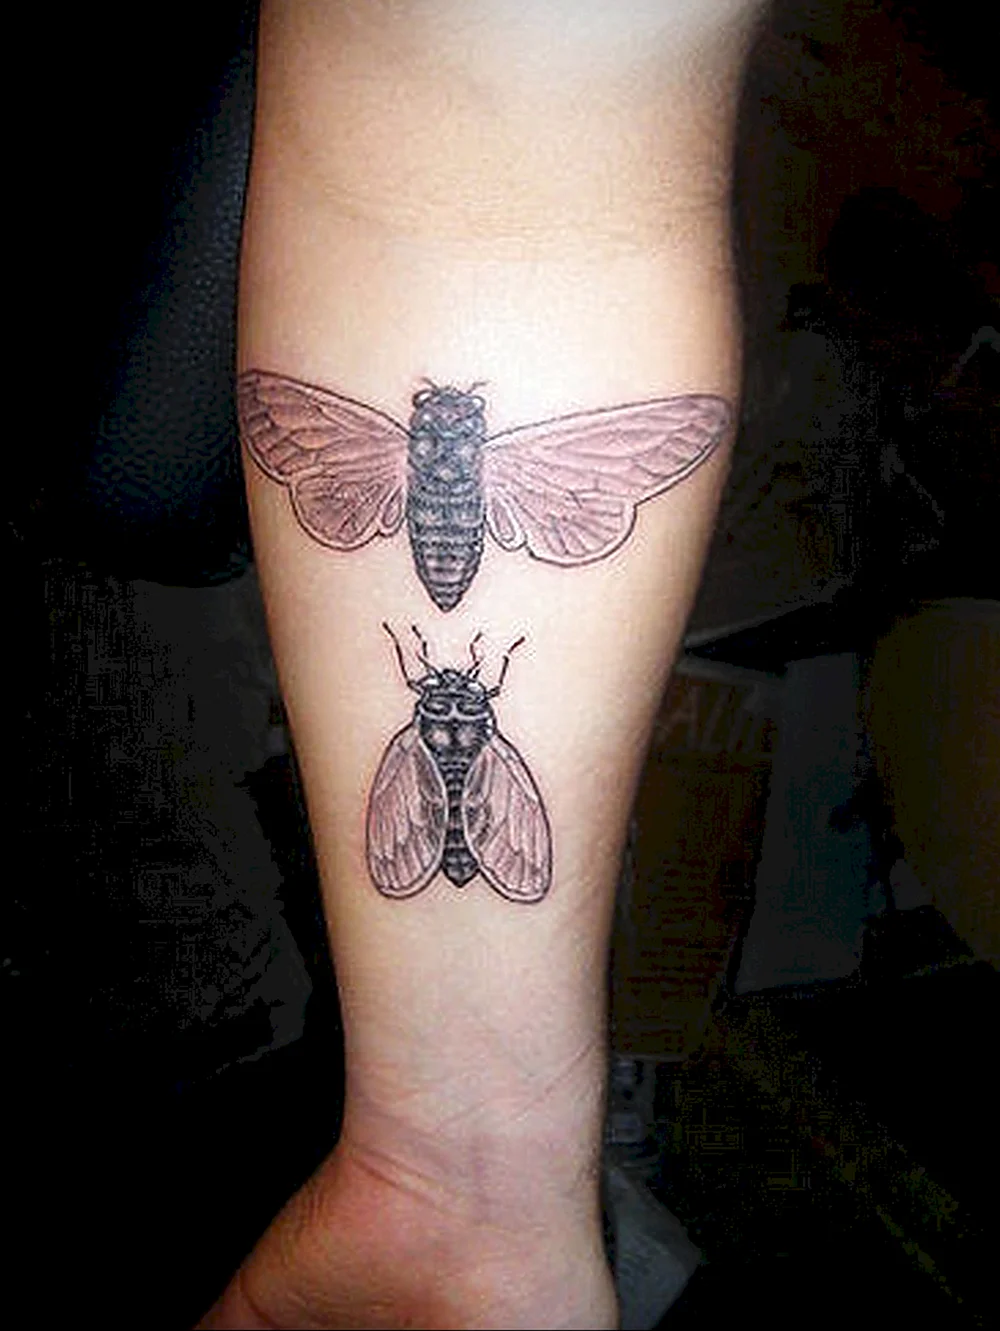 Cicada Tattoo